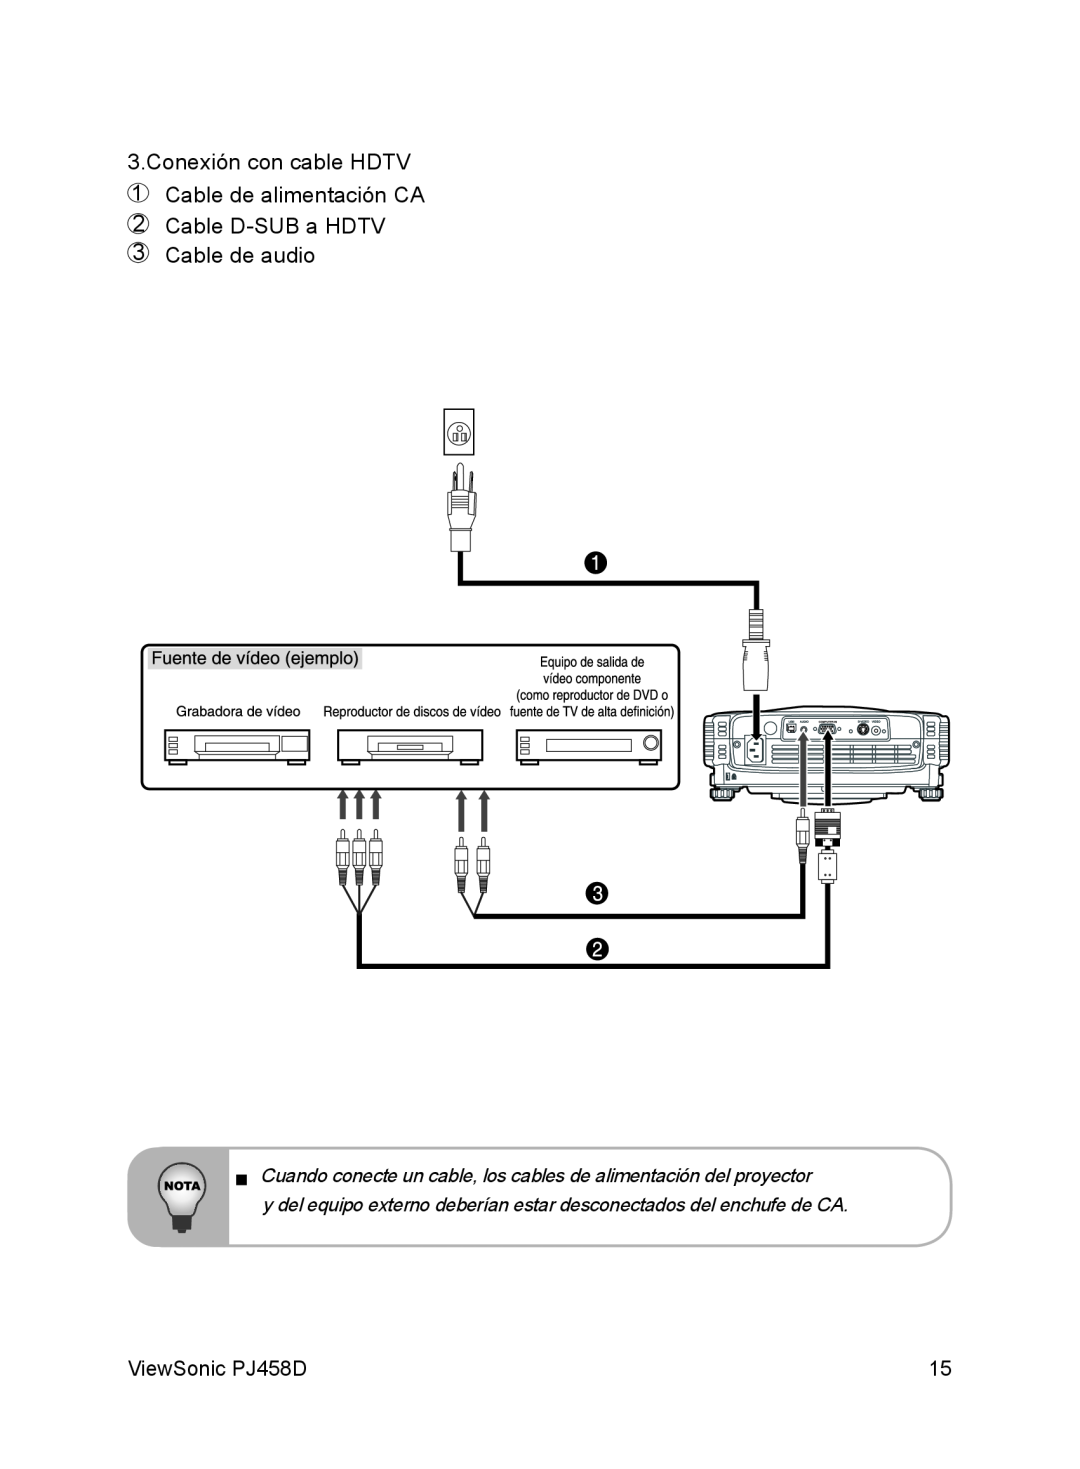 ViewSonic VS10872 Conexión con cable HDTV, Cable de alimentación CA Cable D-SUBa HDTV, Cable de audio, ViewSonic PJ458D 